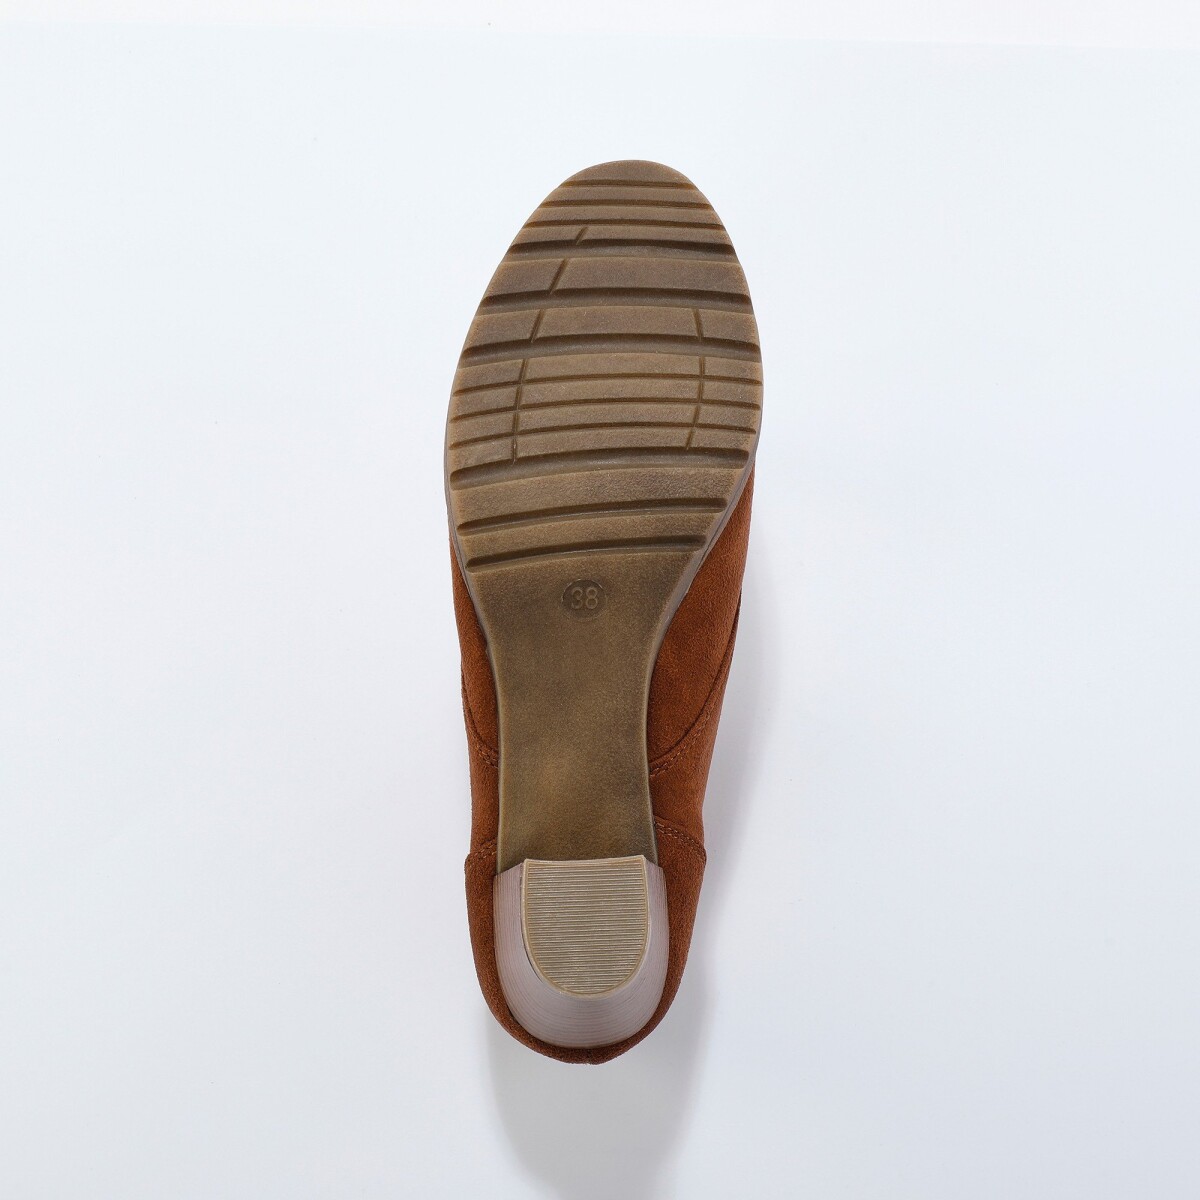 Kotníkové boty na podpatku v dřevěném vzhledu